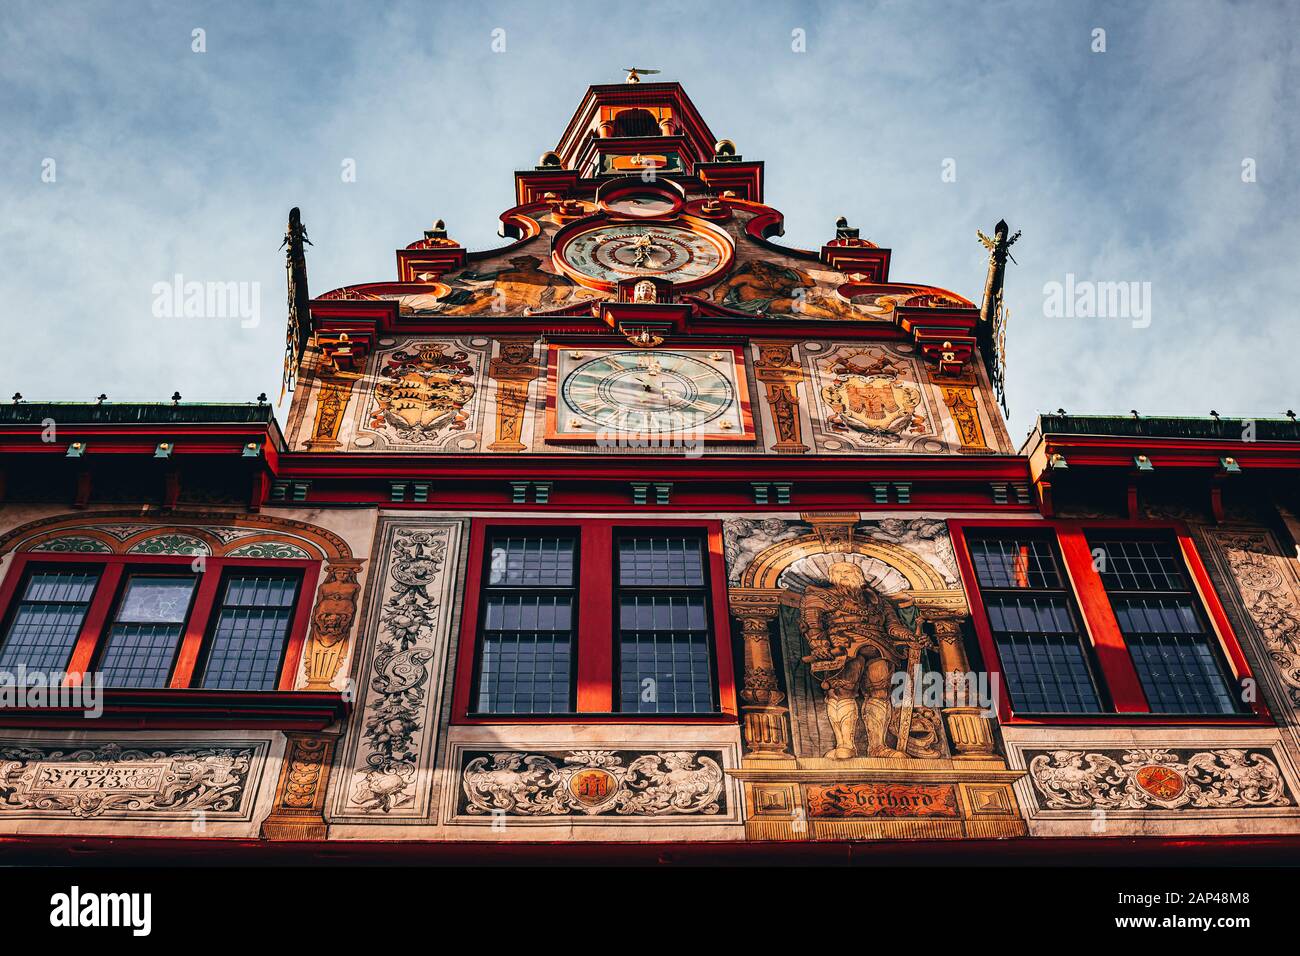 Tuebingen, Deutschland - Dezember 2019: Altes und schönes Rathaus von tübingen in Deutschland mit Uhr und Freskos an der Fassade. Herrliche Aussicht von B. Stockfoto